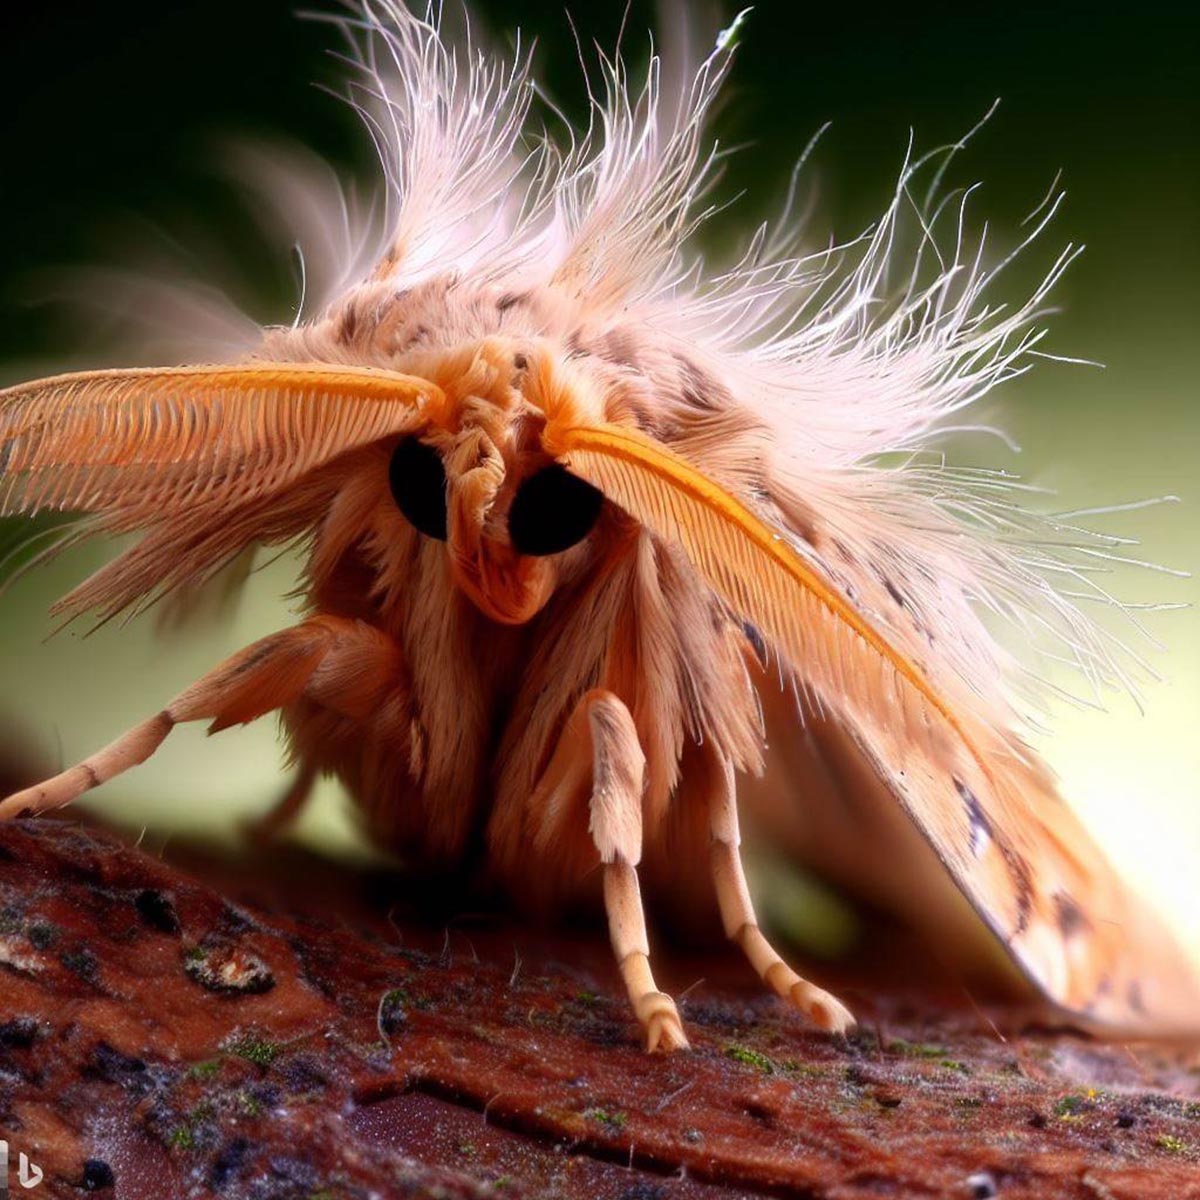 What Do Carpet Moths Look Like